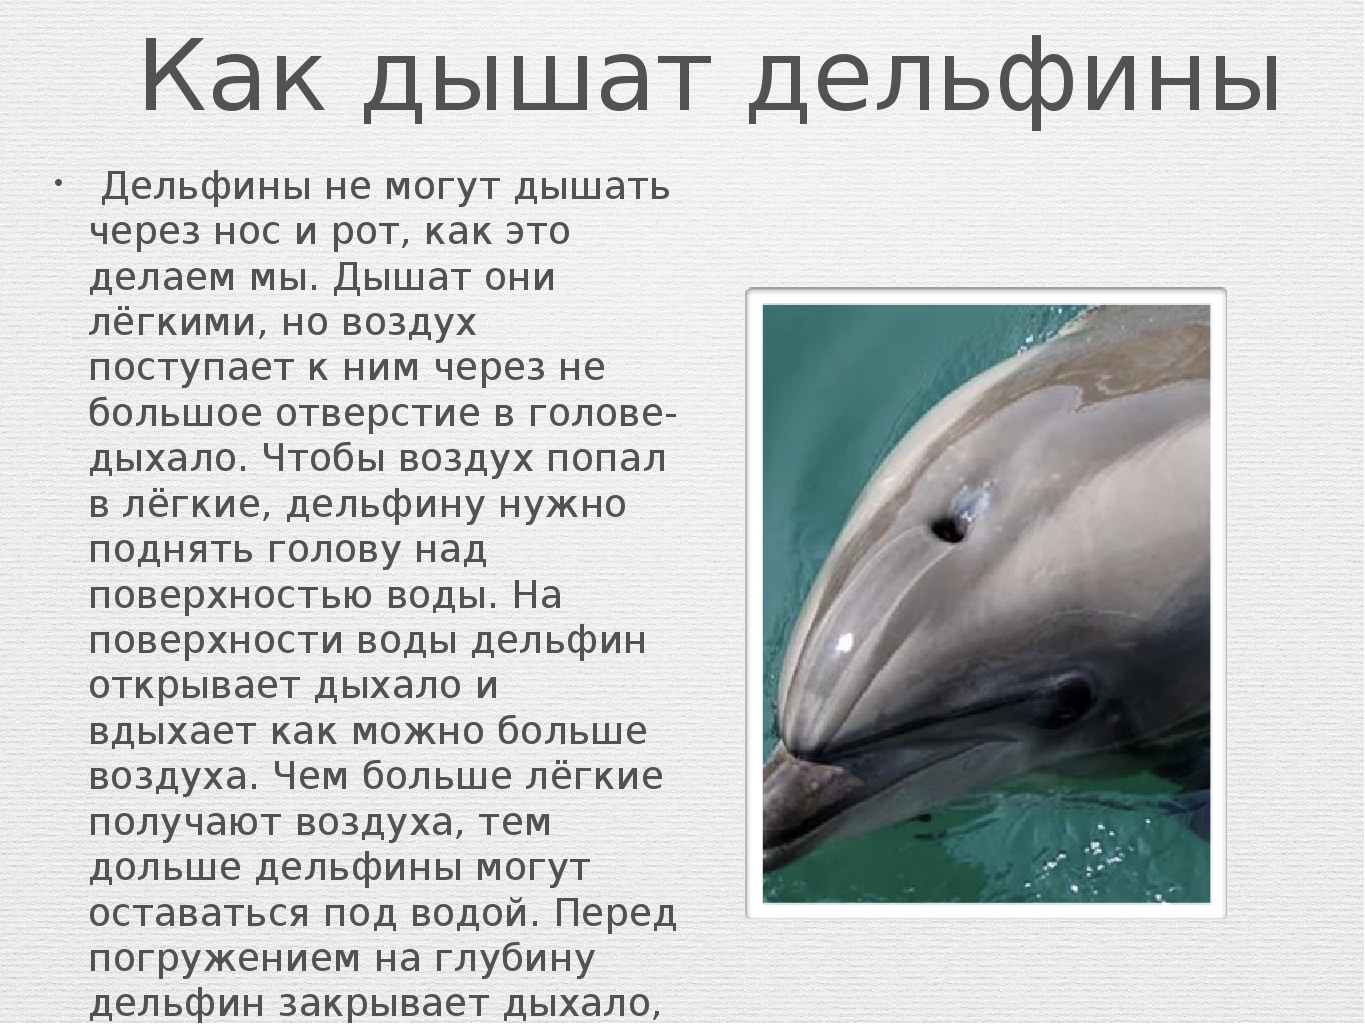 У кита альвеолярные легкие. Дельфин дышит. Дельфины дышат. Дыхательная система дельфина. Дельфин орган дыхания.